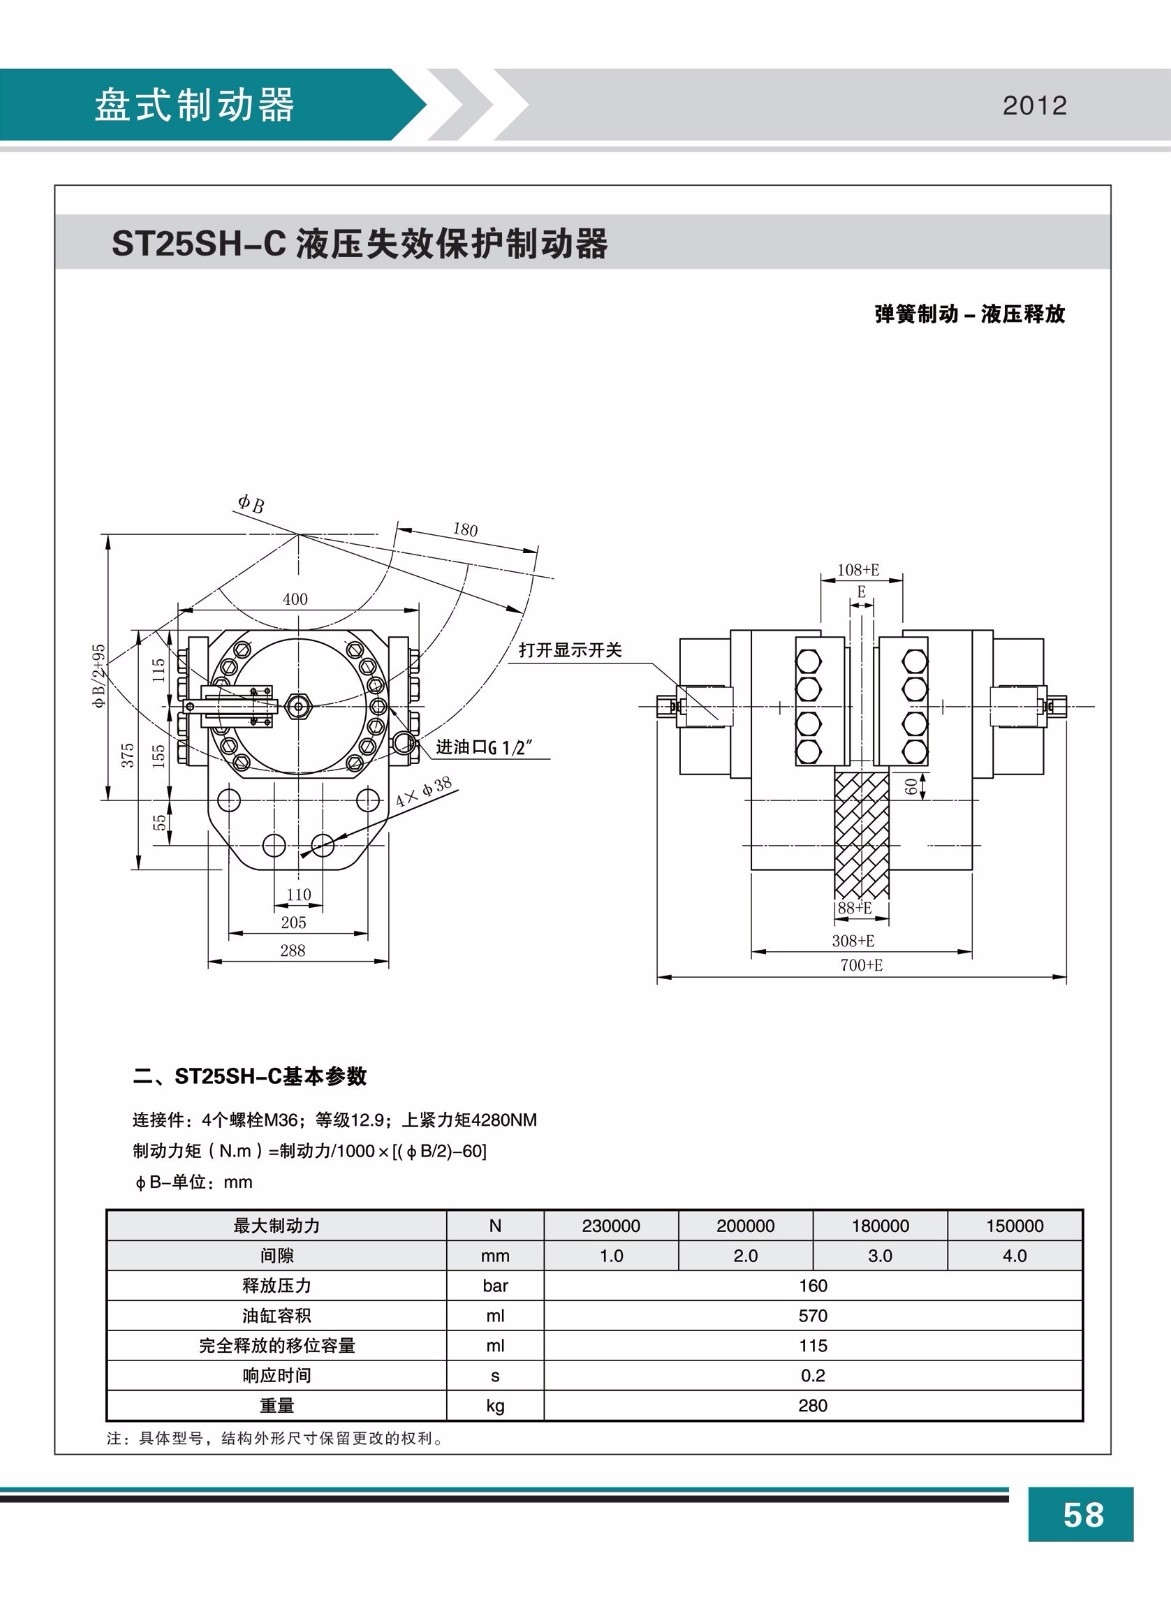 ST25SH-C液壓失效保護制動器